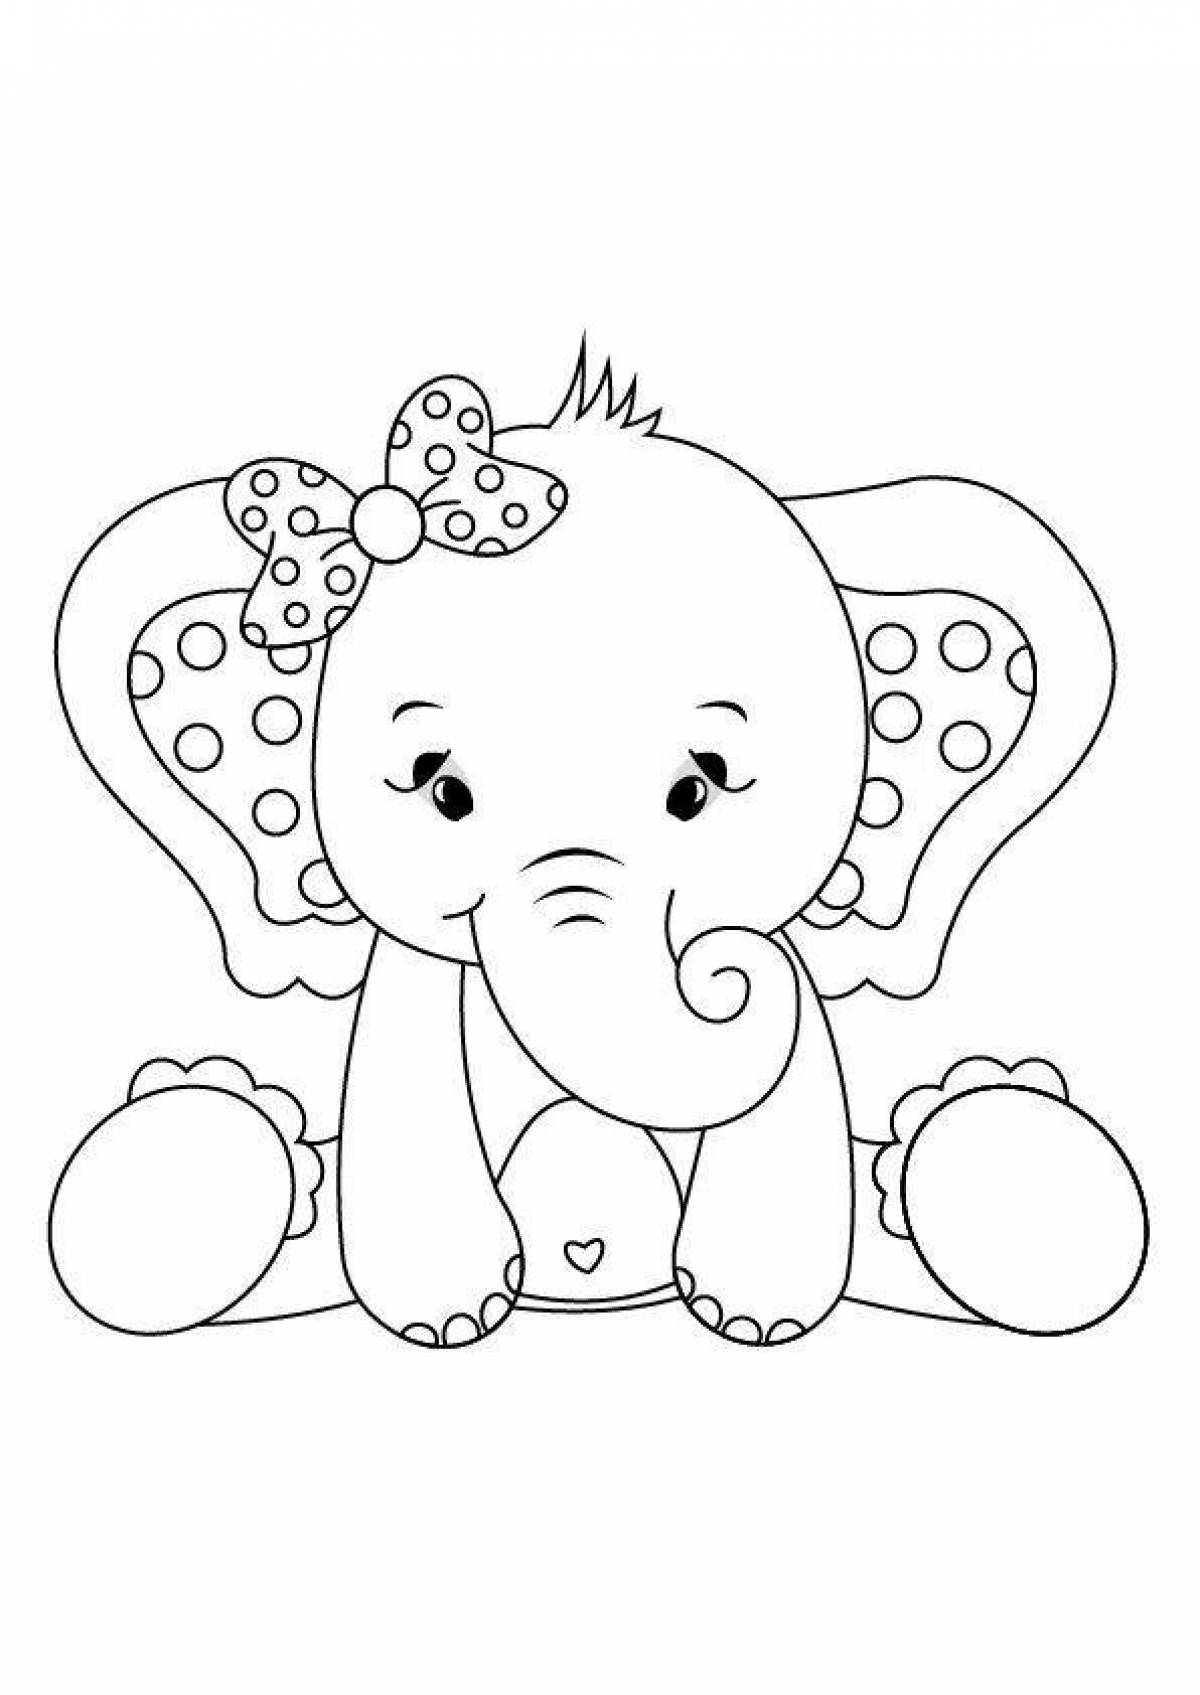 Веселая раскраска слона для детей 3-4 лет